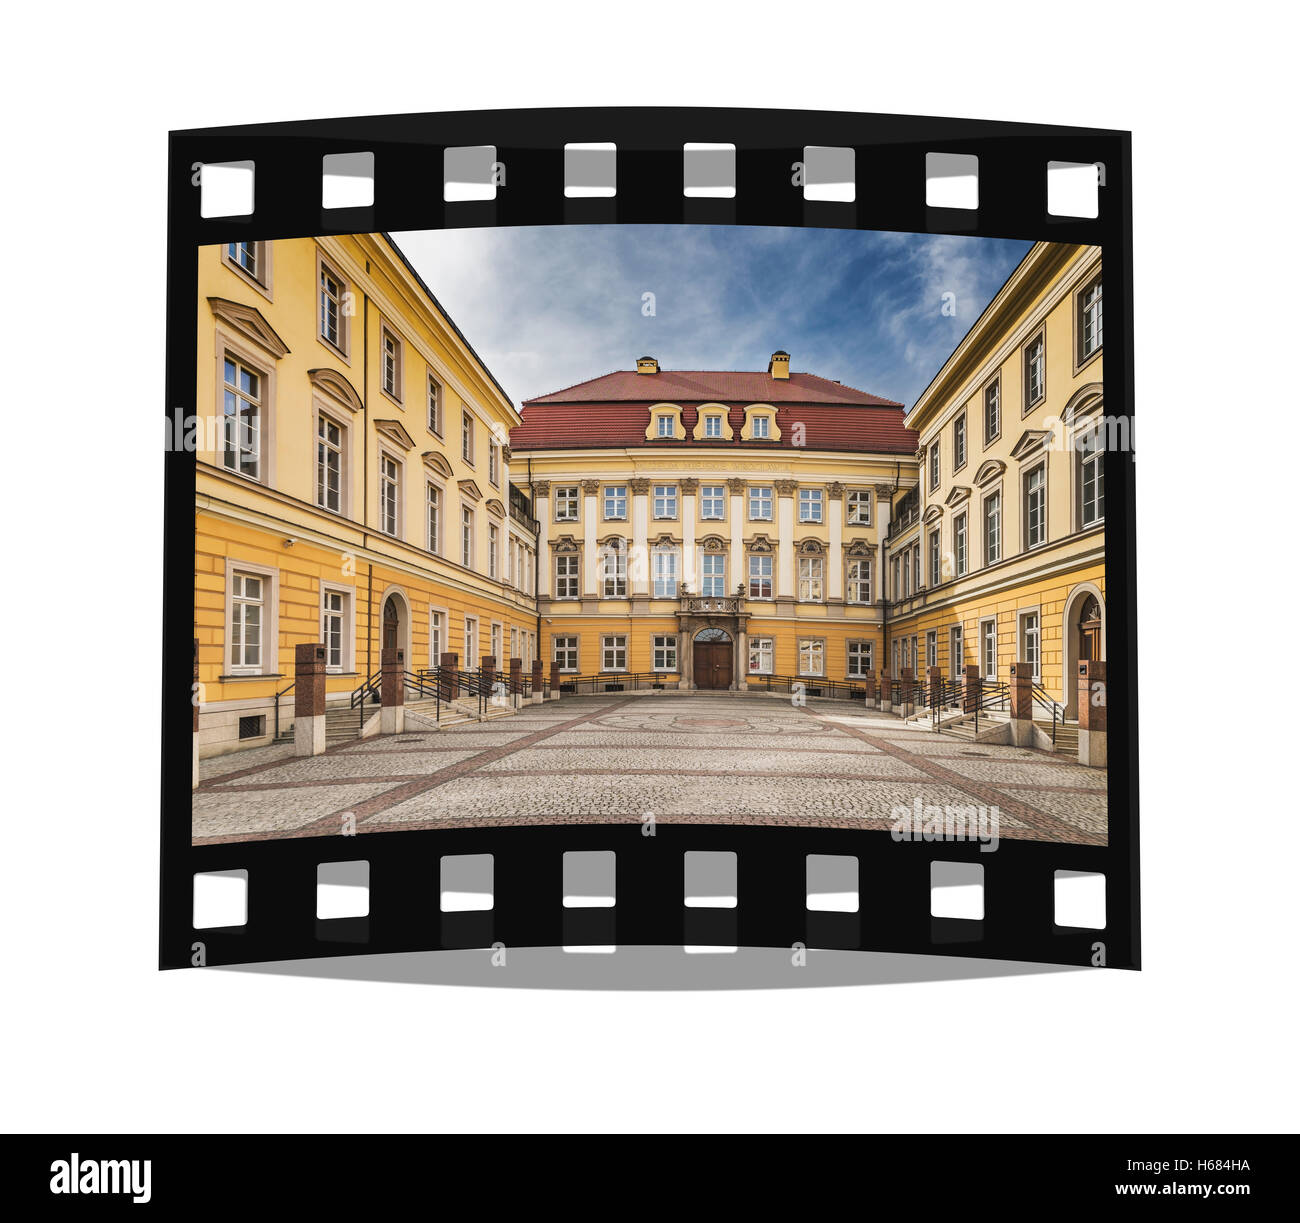 Der königliche Palast Breslau war seit 1750 die Residenz der preußischen Hohenzollern. Heute ist es ein Museum, Wroclaw/Breslau, Polen, Europa Stockfoto